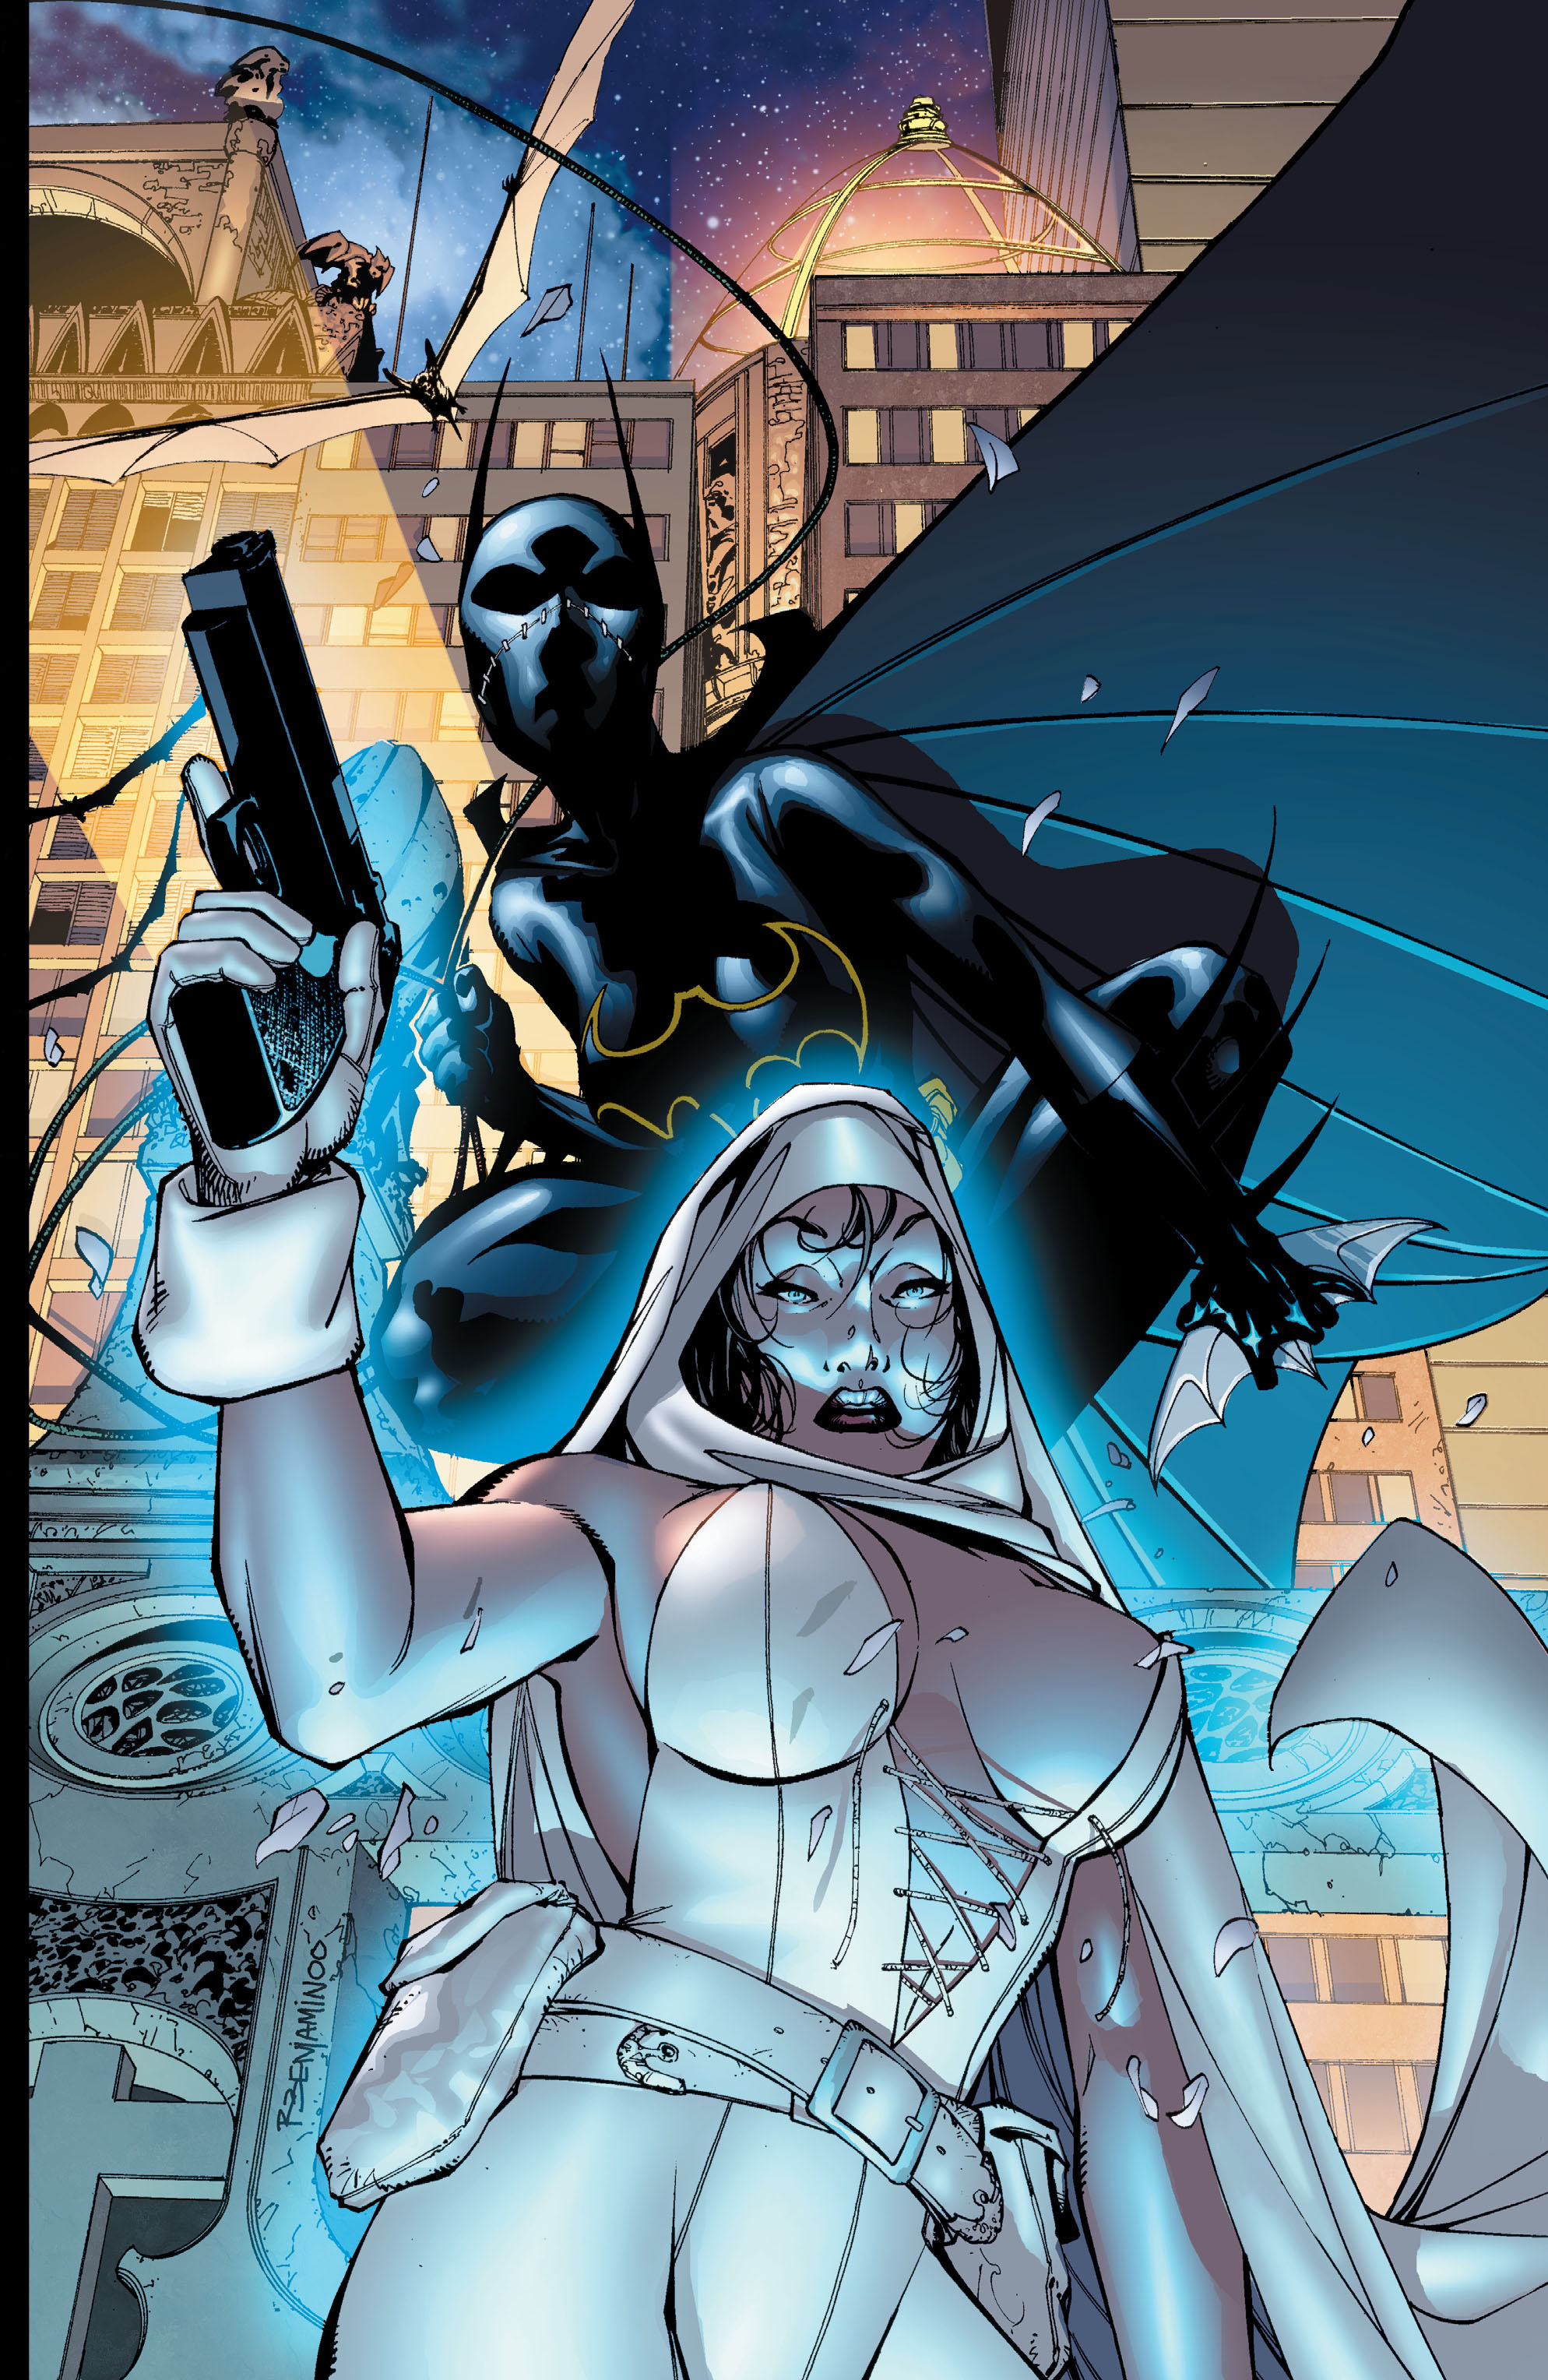 DC Comics/Dark Horse Comics: Justice League Full #1 - English 305